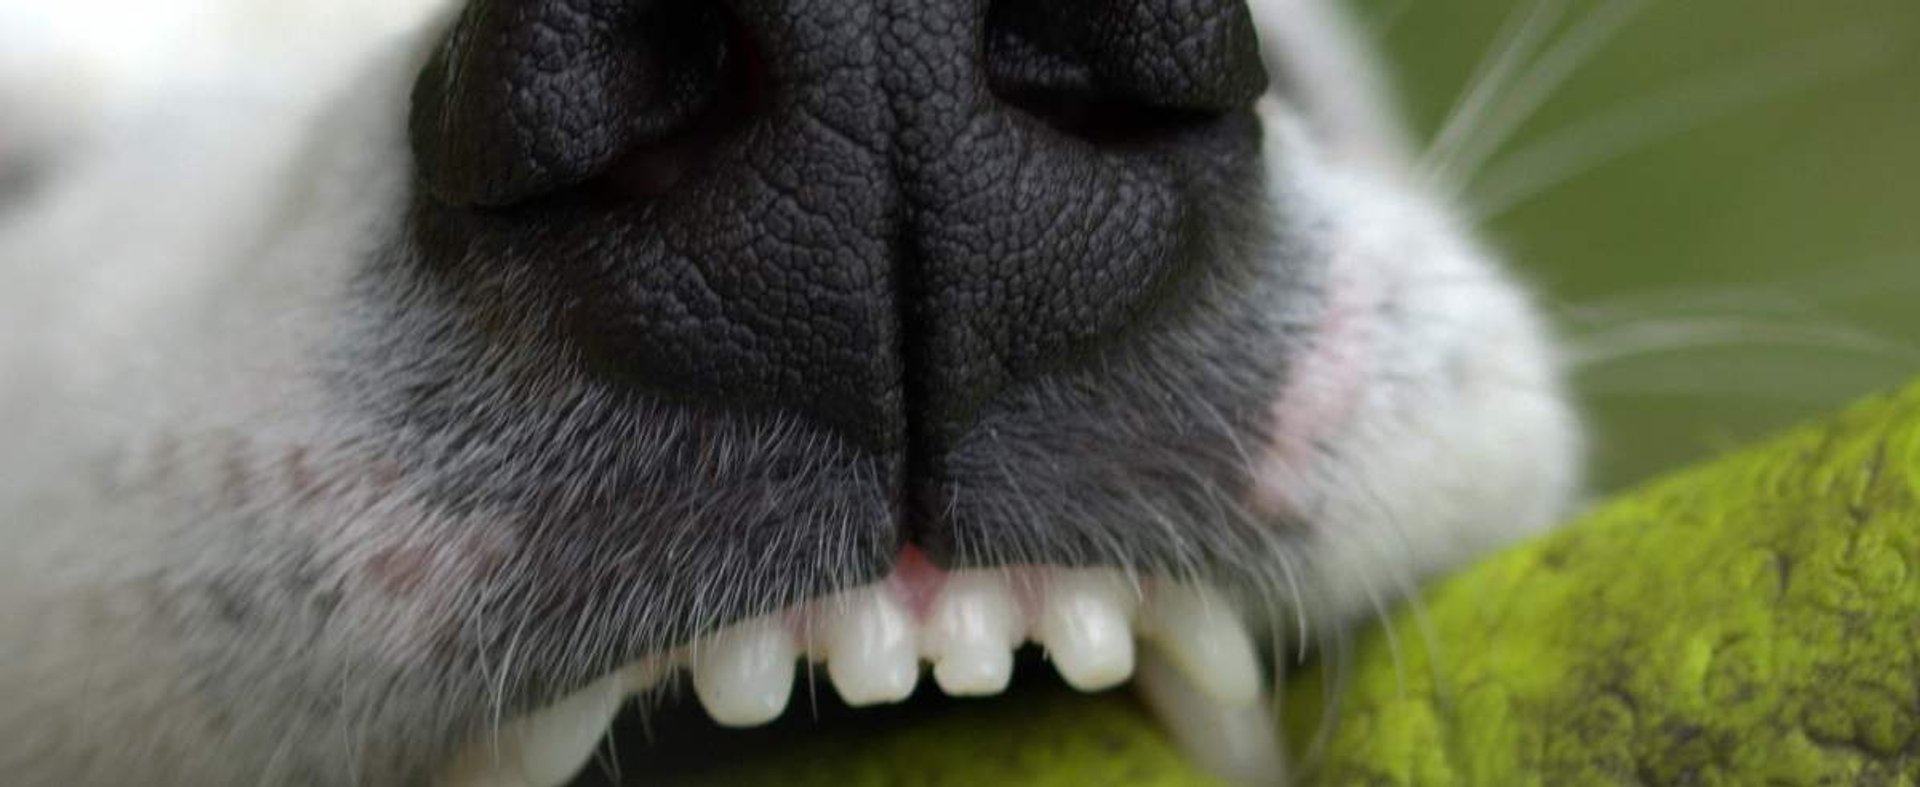 Jak dbać o zęby psa? Zasady i porady